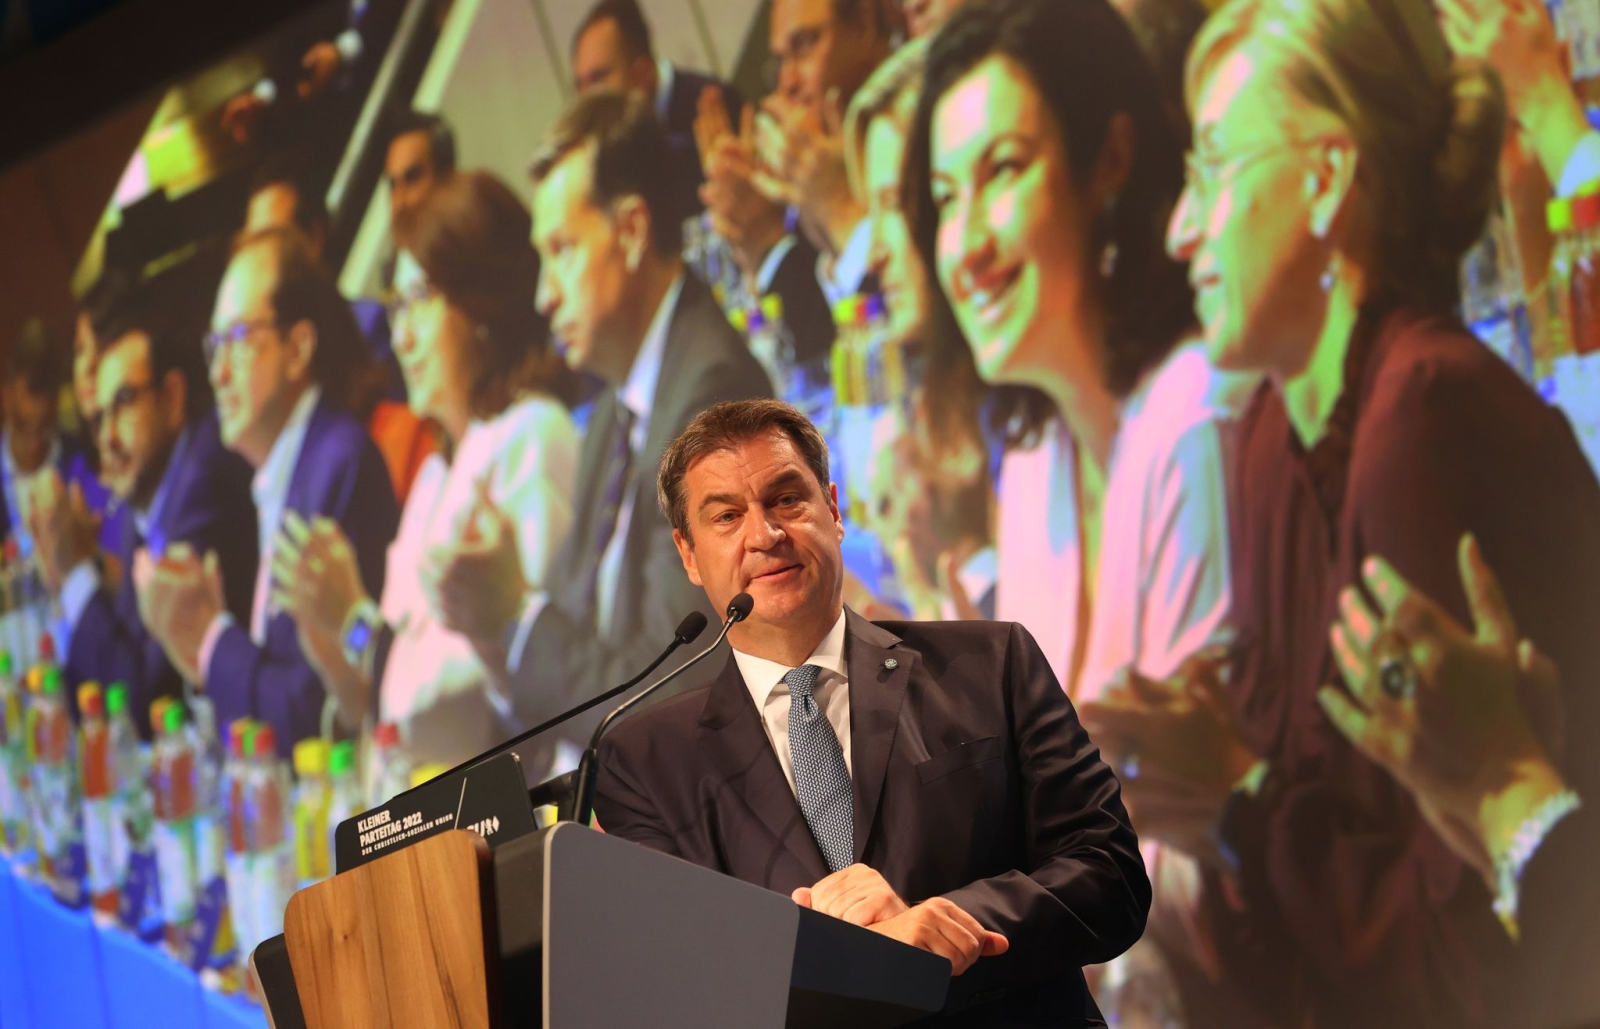 Markus Söder, Parteivorsitzender der CSU, steht während einer Rede auf der Bühne.